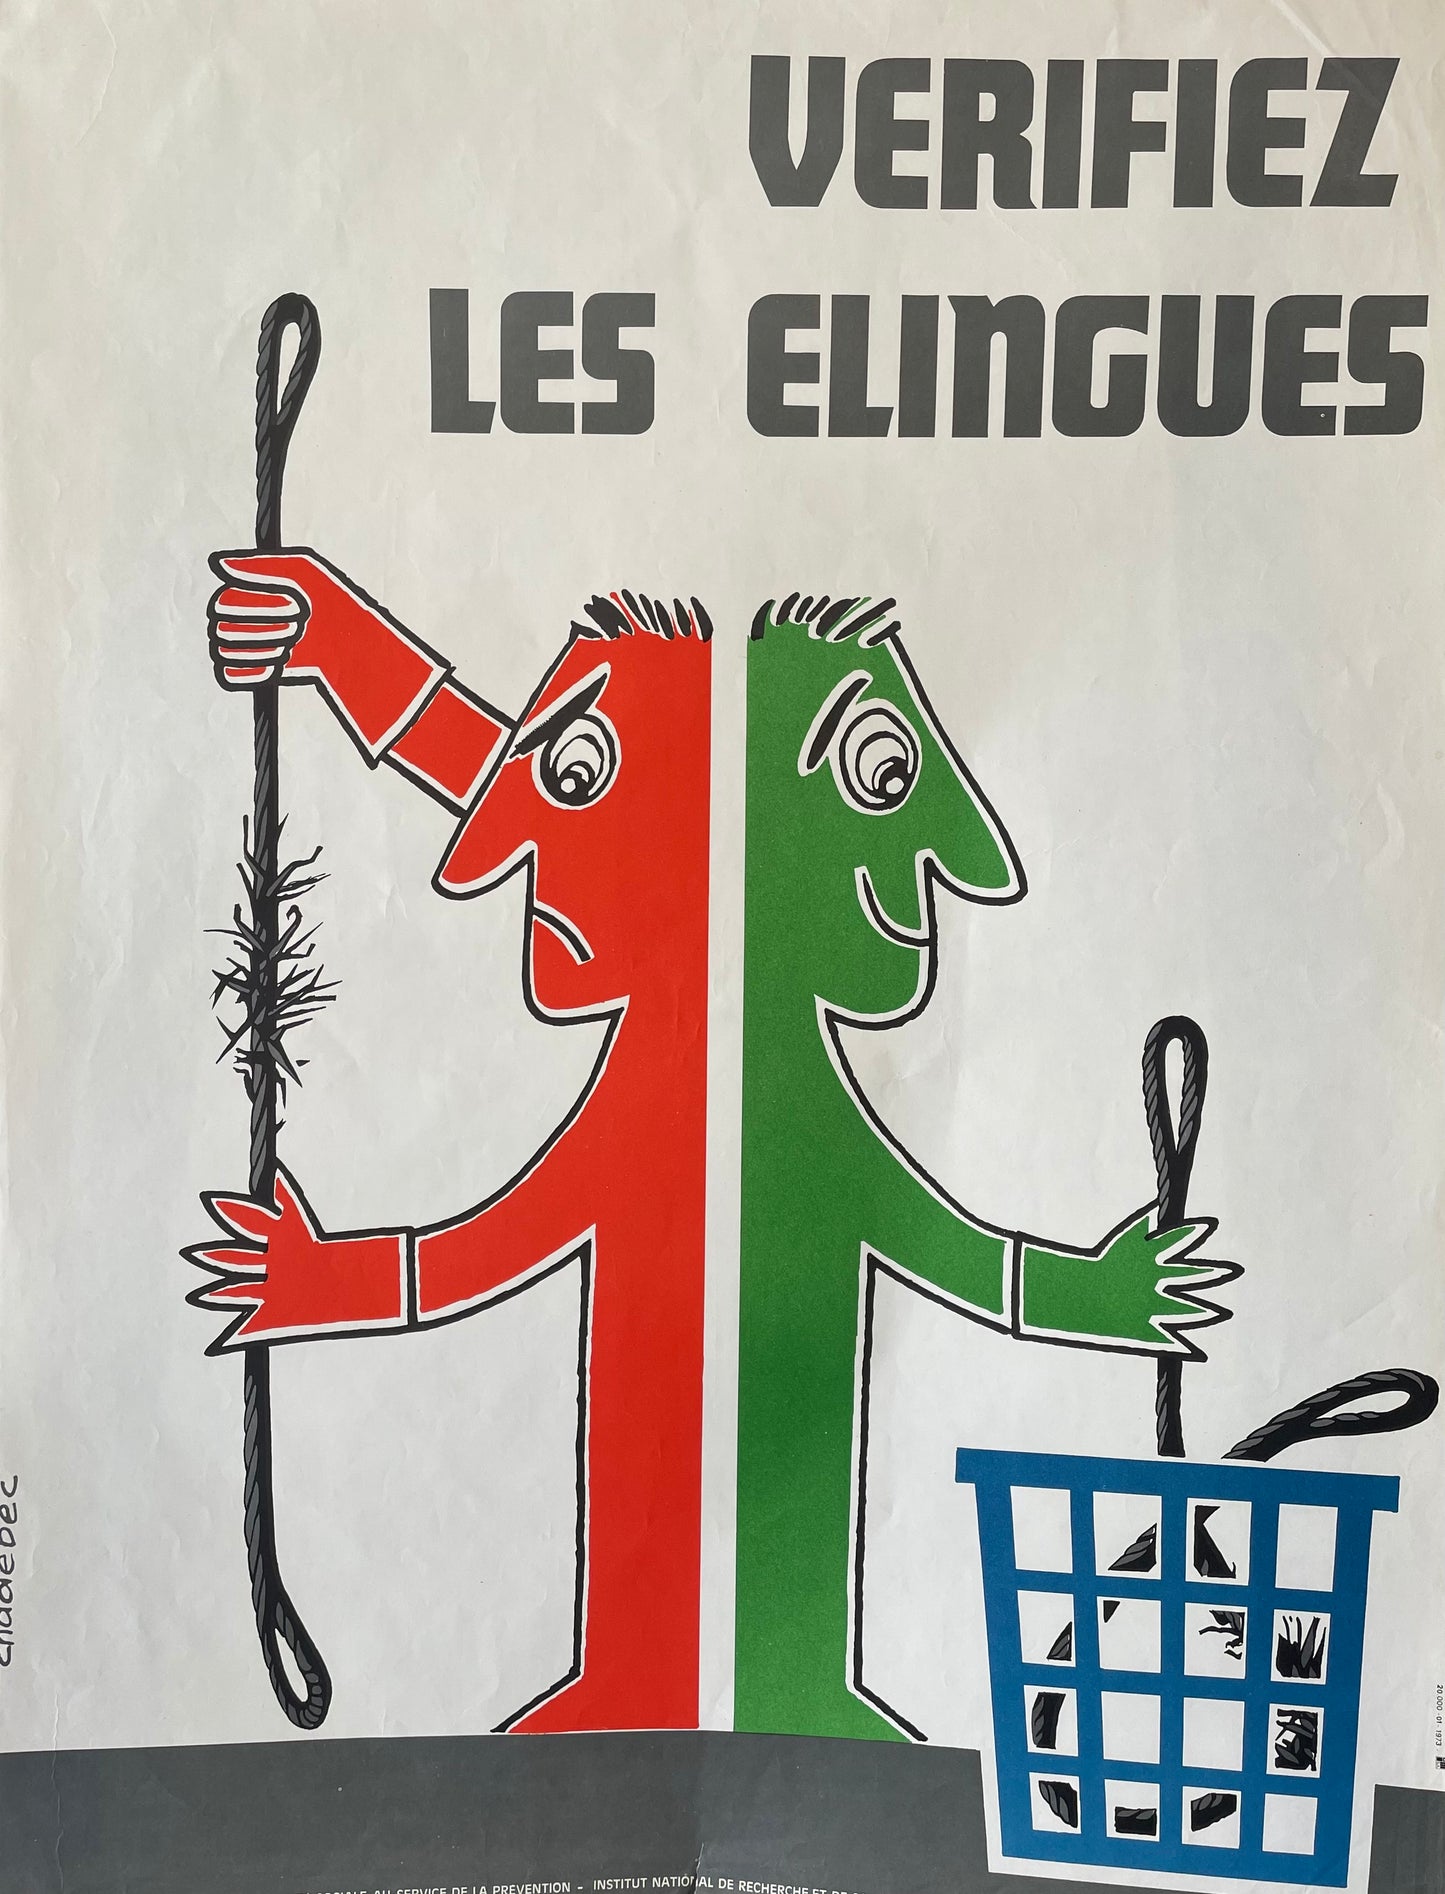 Verifiez Les Elingues by Chadebec